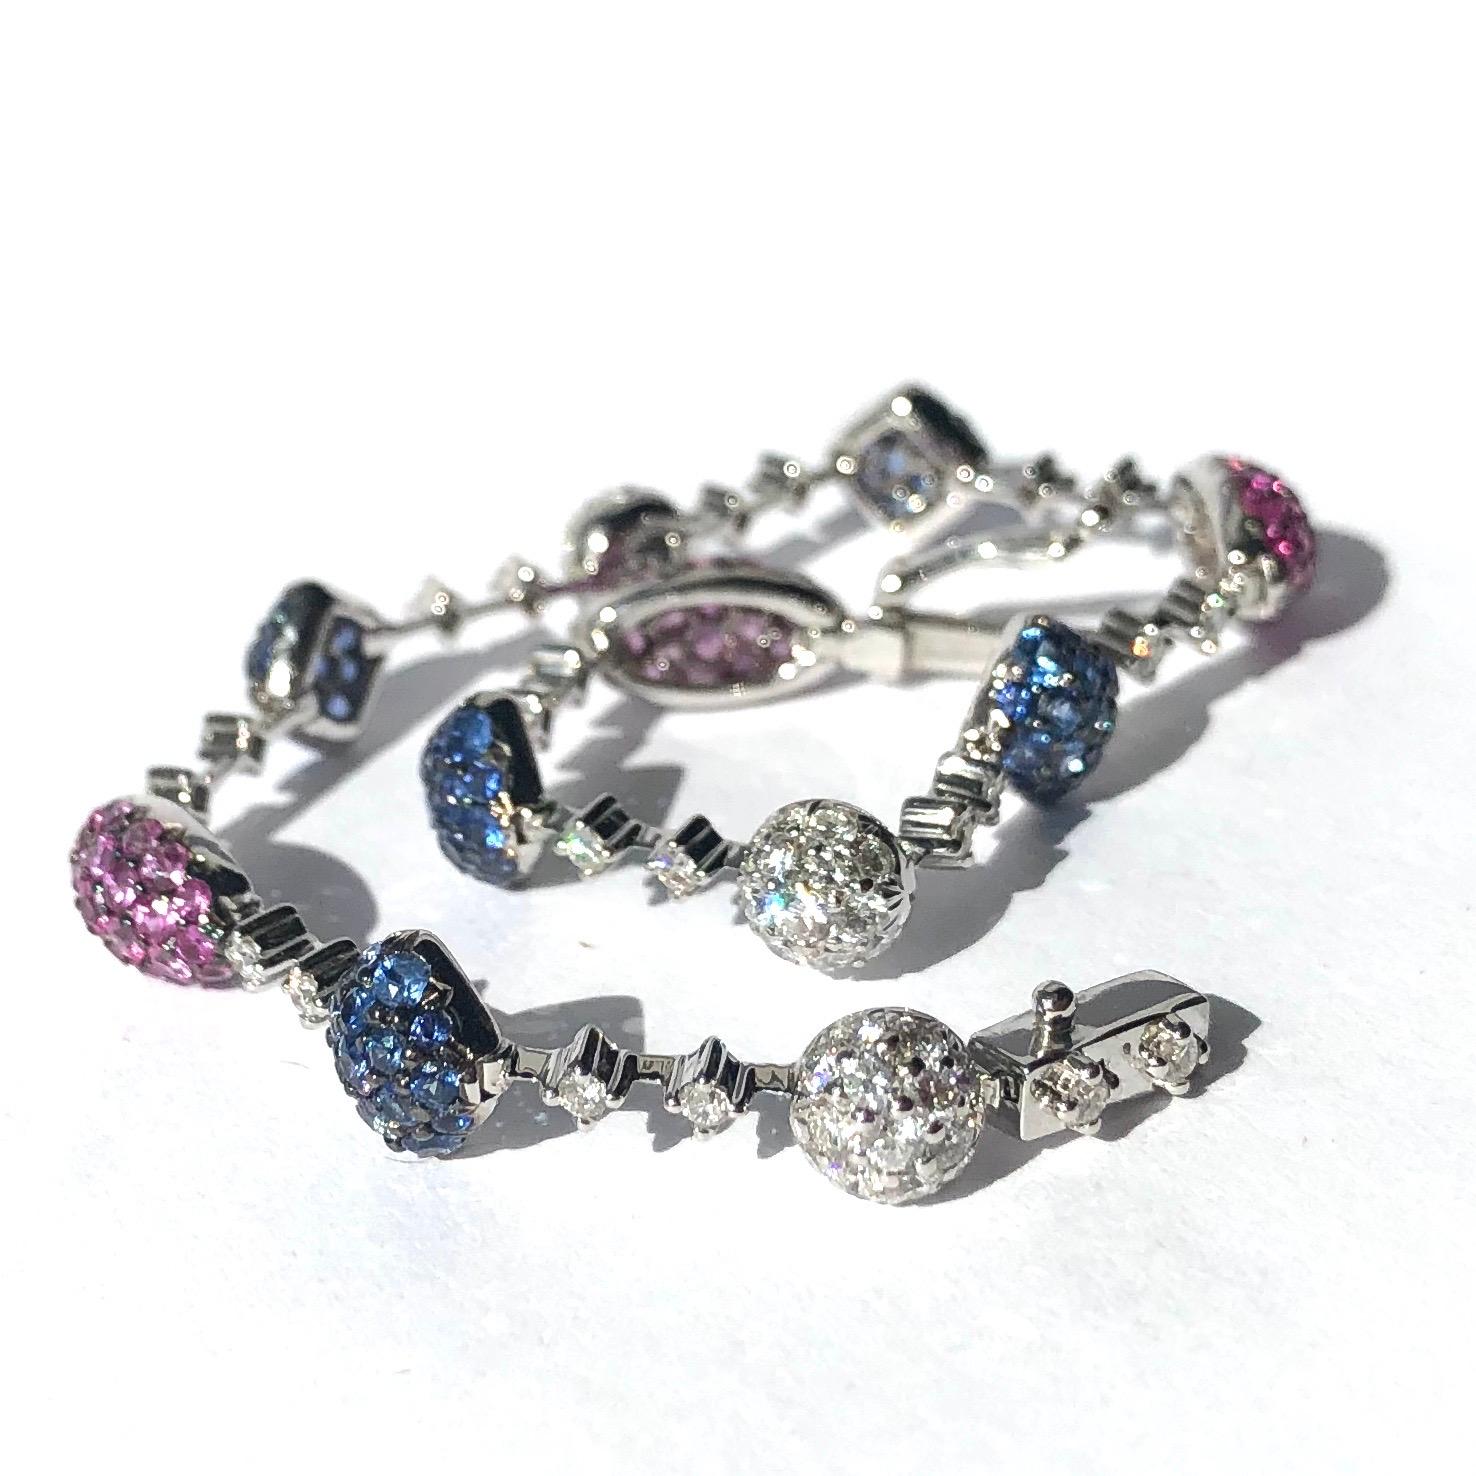 Dieses aufsehenerregende Armband ist mit glitzernden, tiefrosa Rubinen, blauen Saphiren und leuchtenden Diamanten geschmückt. Die Rubine sind in geschwungene ovale Felder gefasst, die durch ein Glied verbunden sind, das auch zwei Diamanten sowie die